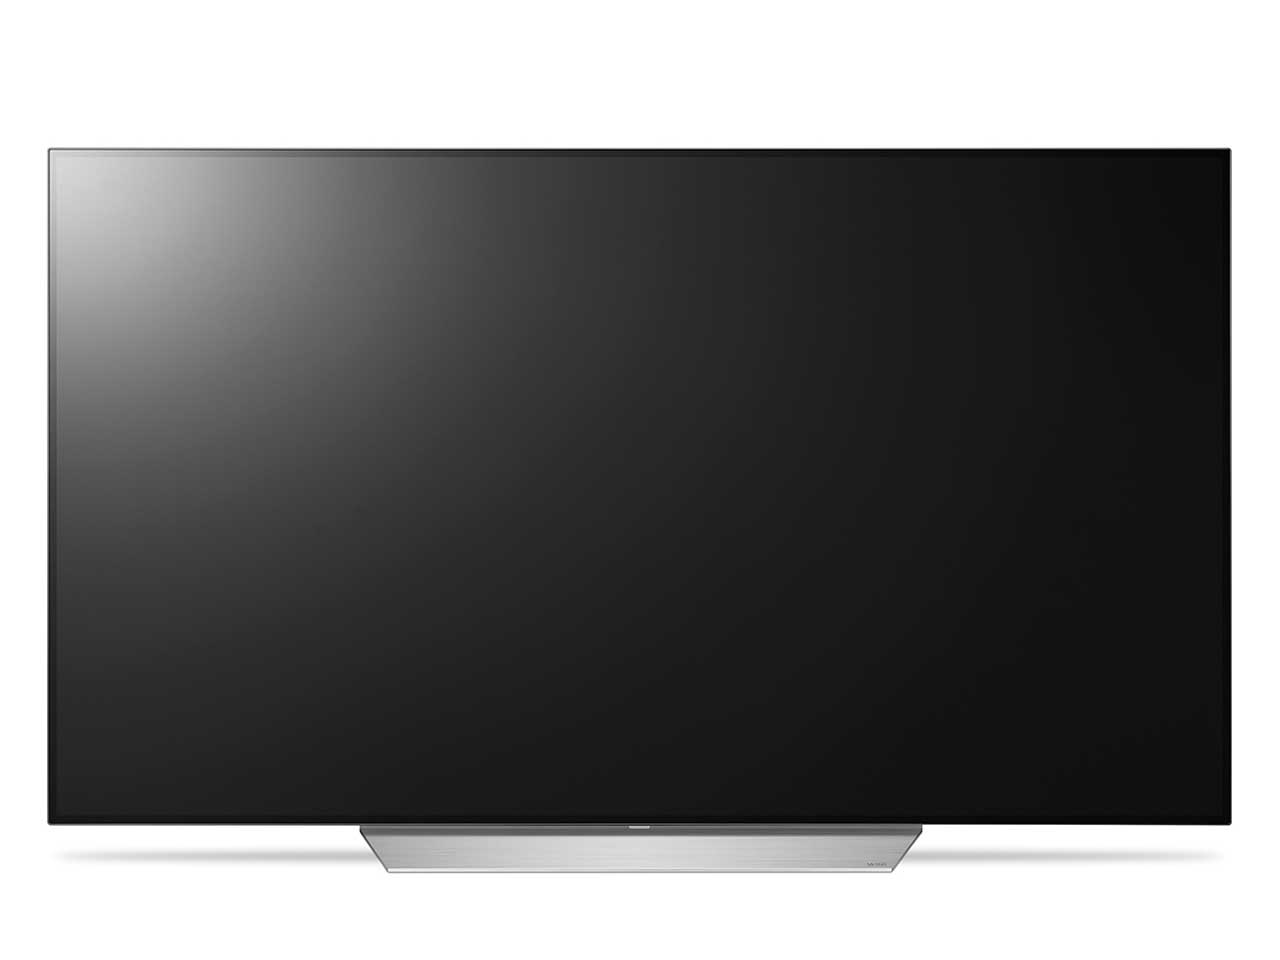 LGエレクトロニクス・ジャパン 55インチ液晶テレビ OLED55C7P